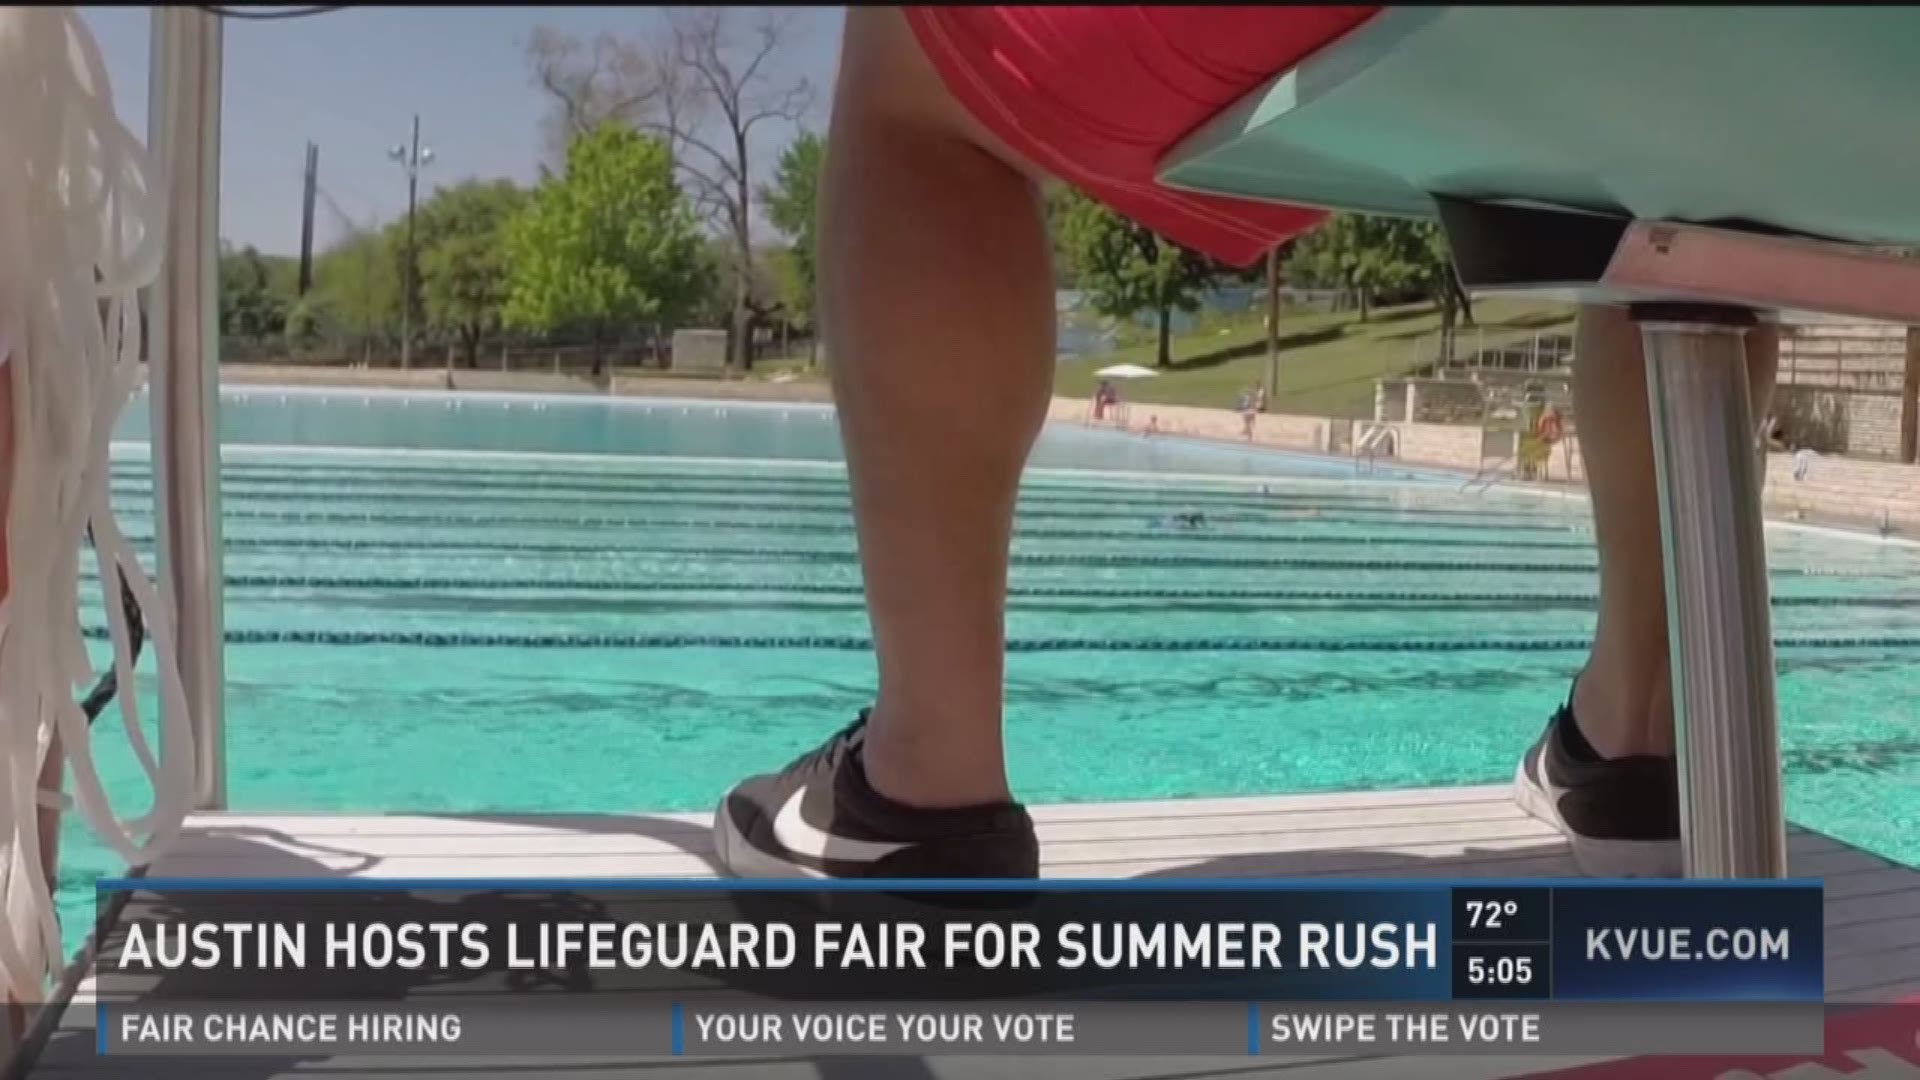 Austin hosts lifeguard fair for summer rush